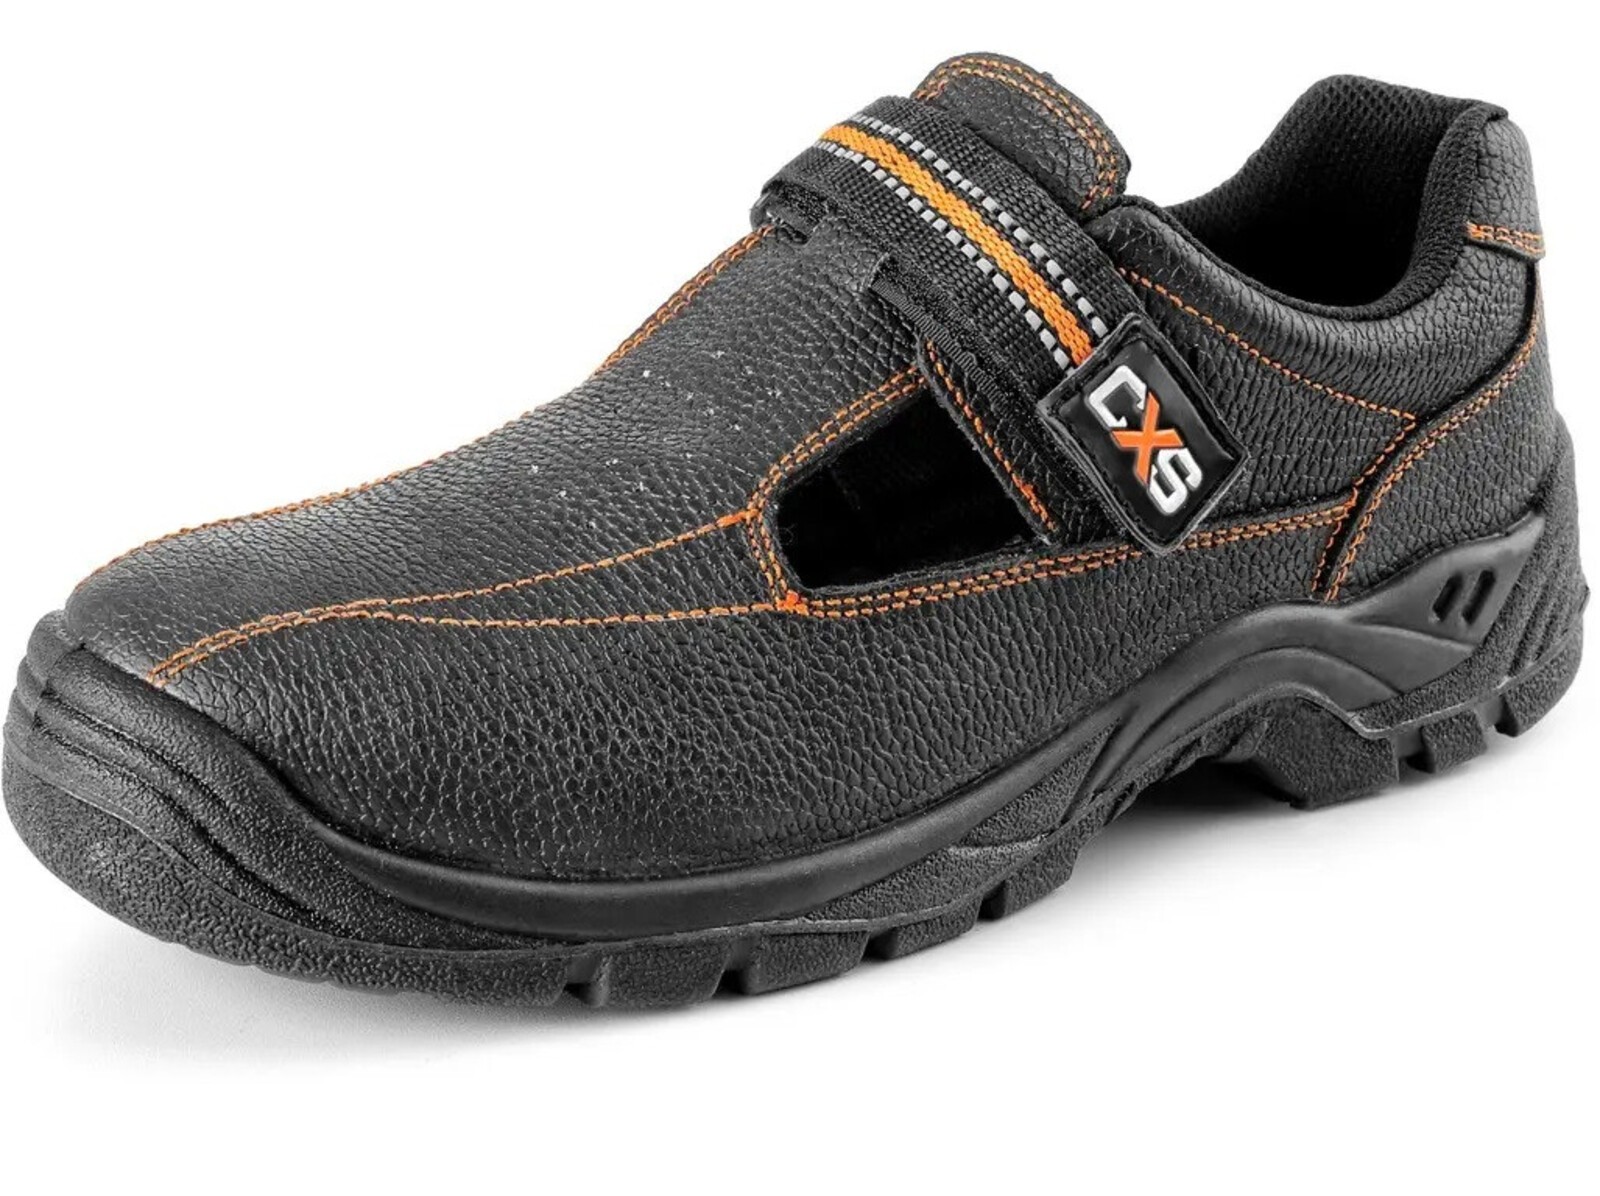 Bezpečnostné sandále CXS Stone Nefrit S1 SRC - veľkosť: 38, farba: čierna/oranžová